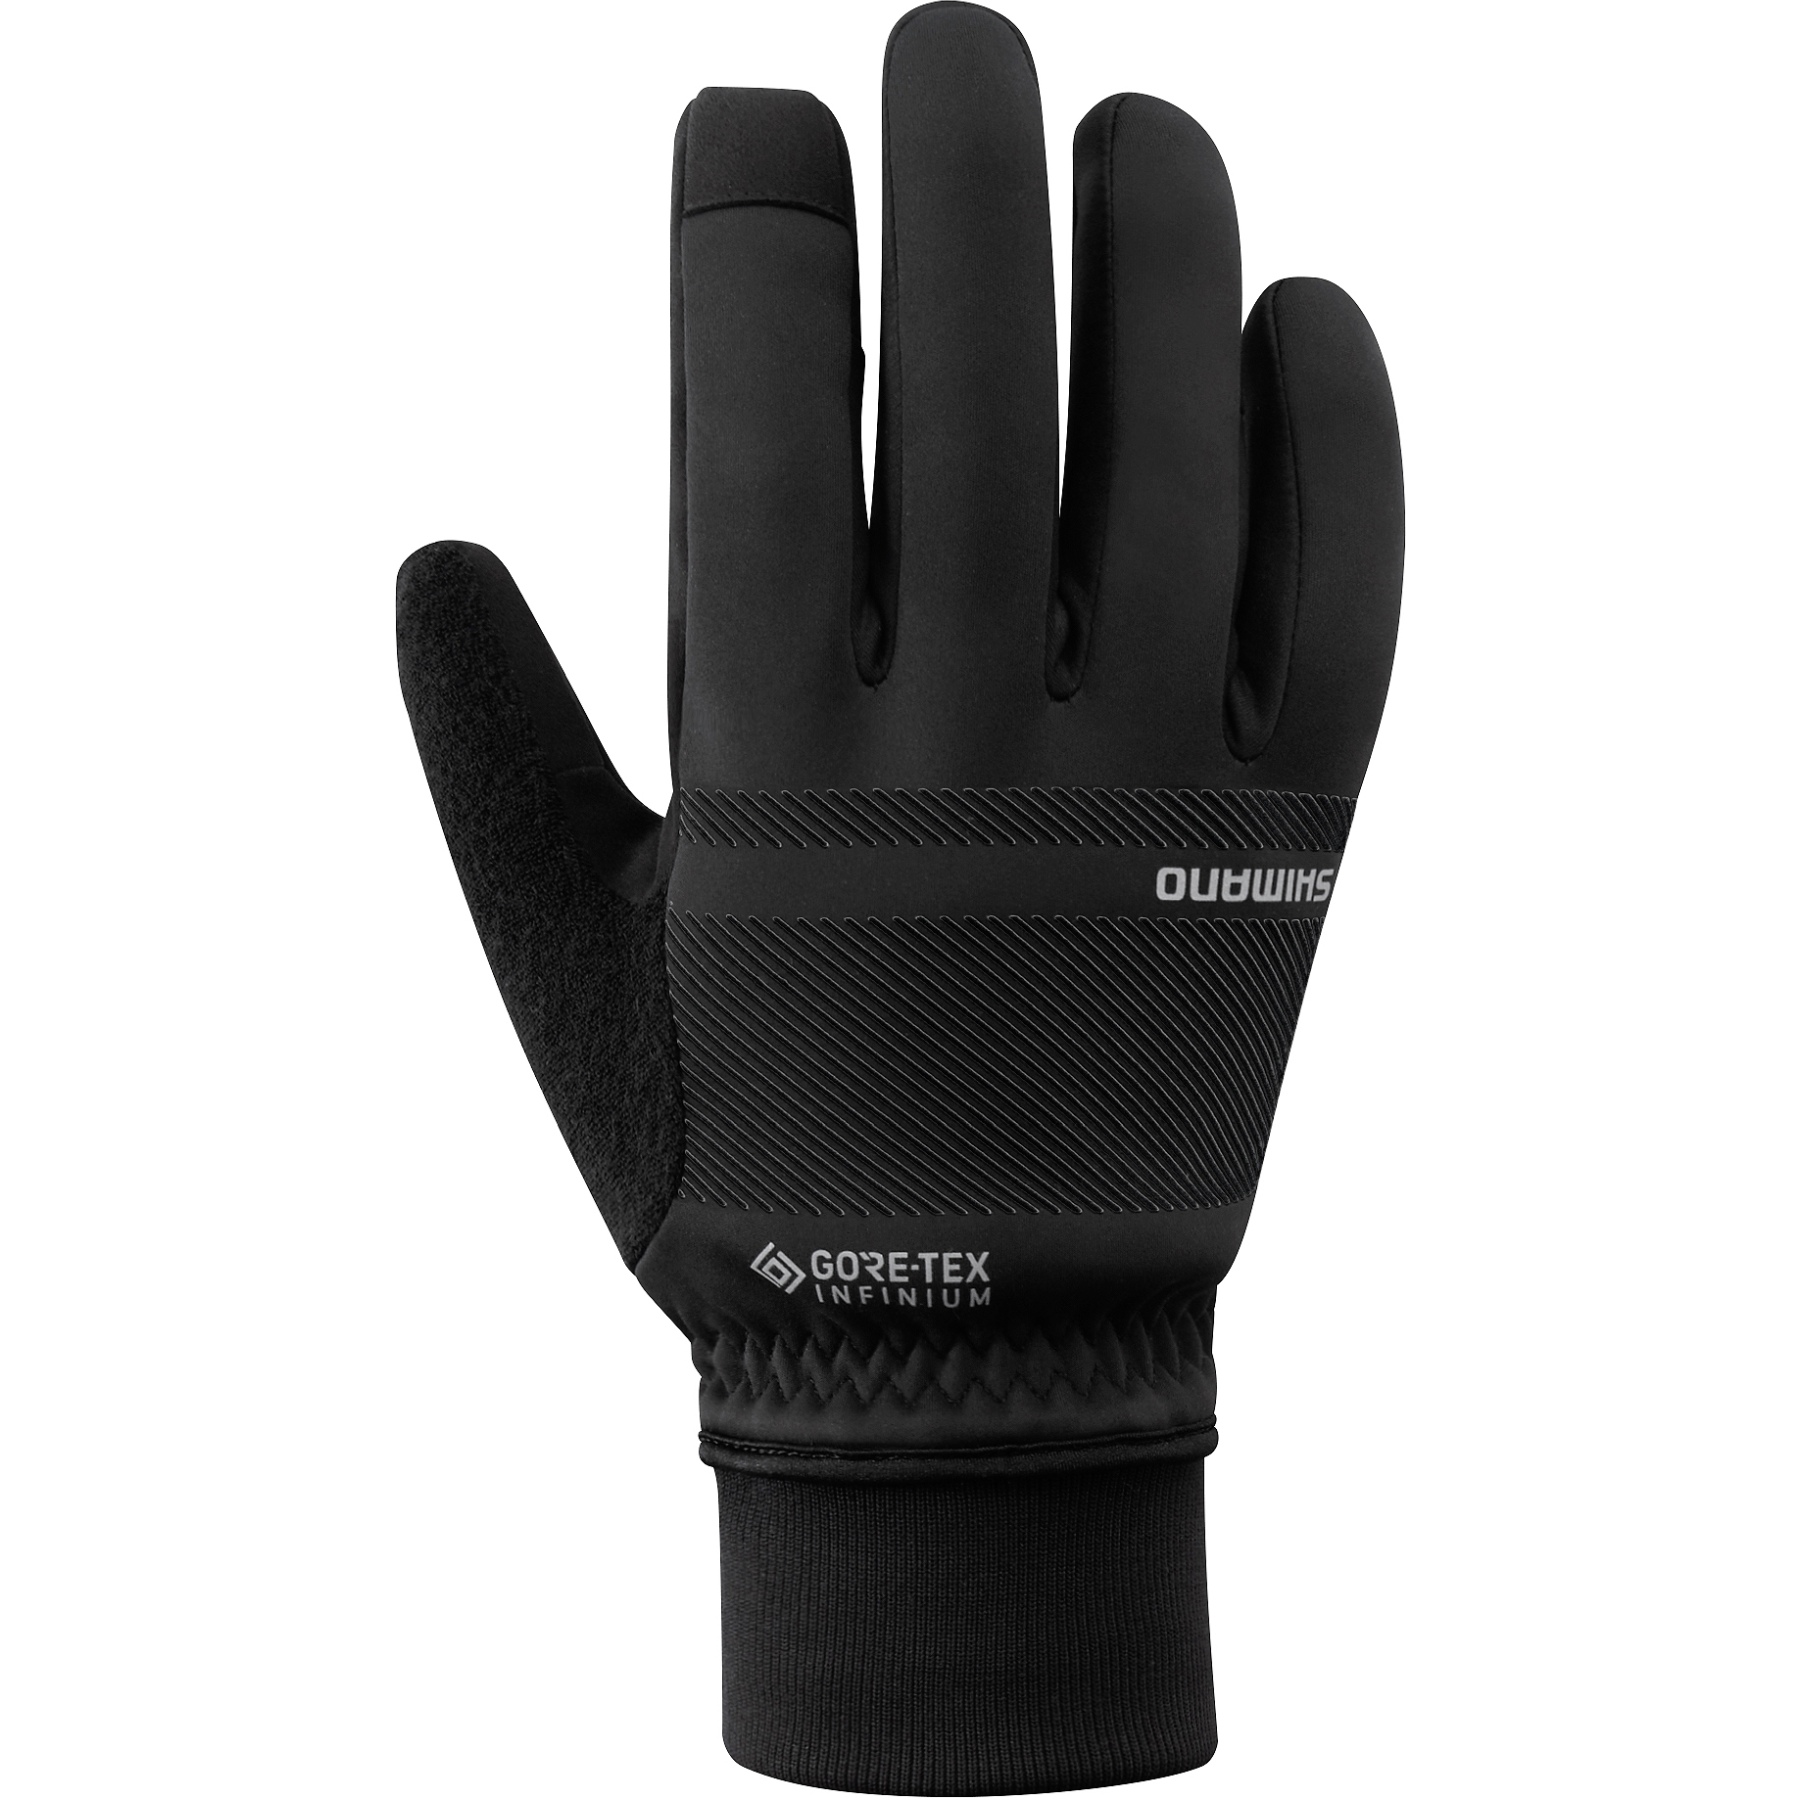 Produktbild von Shimano Infinium Primaloft Handschuhe - black